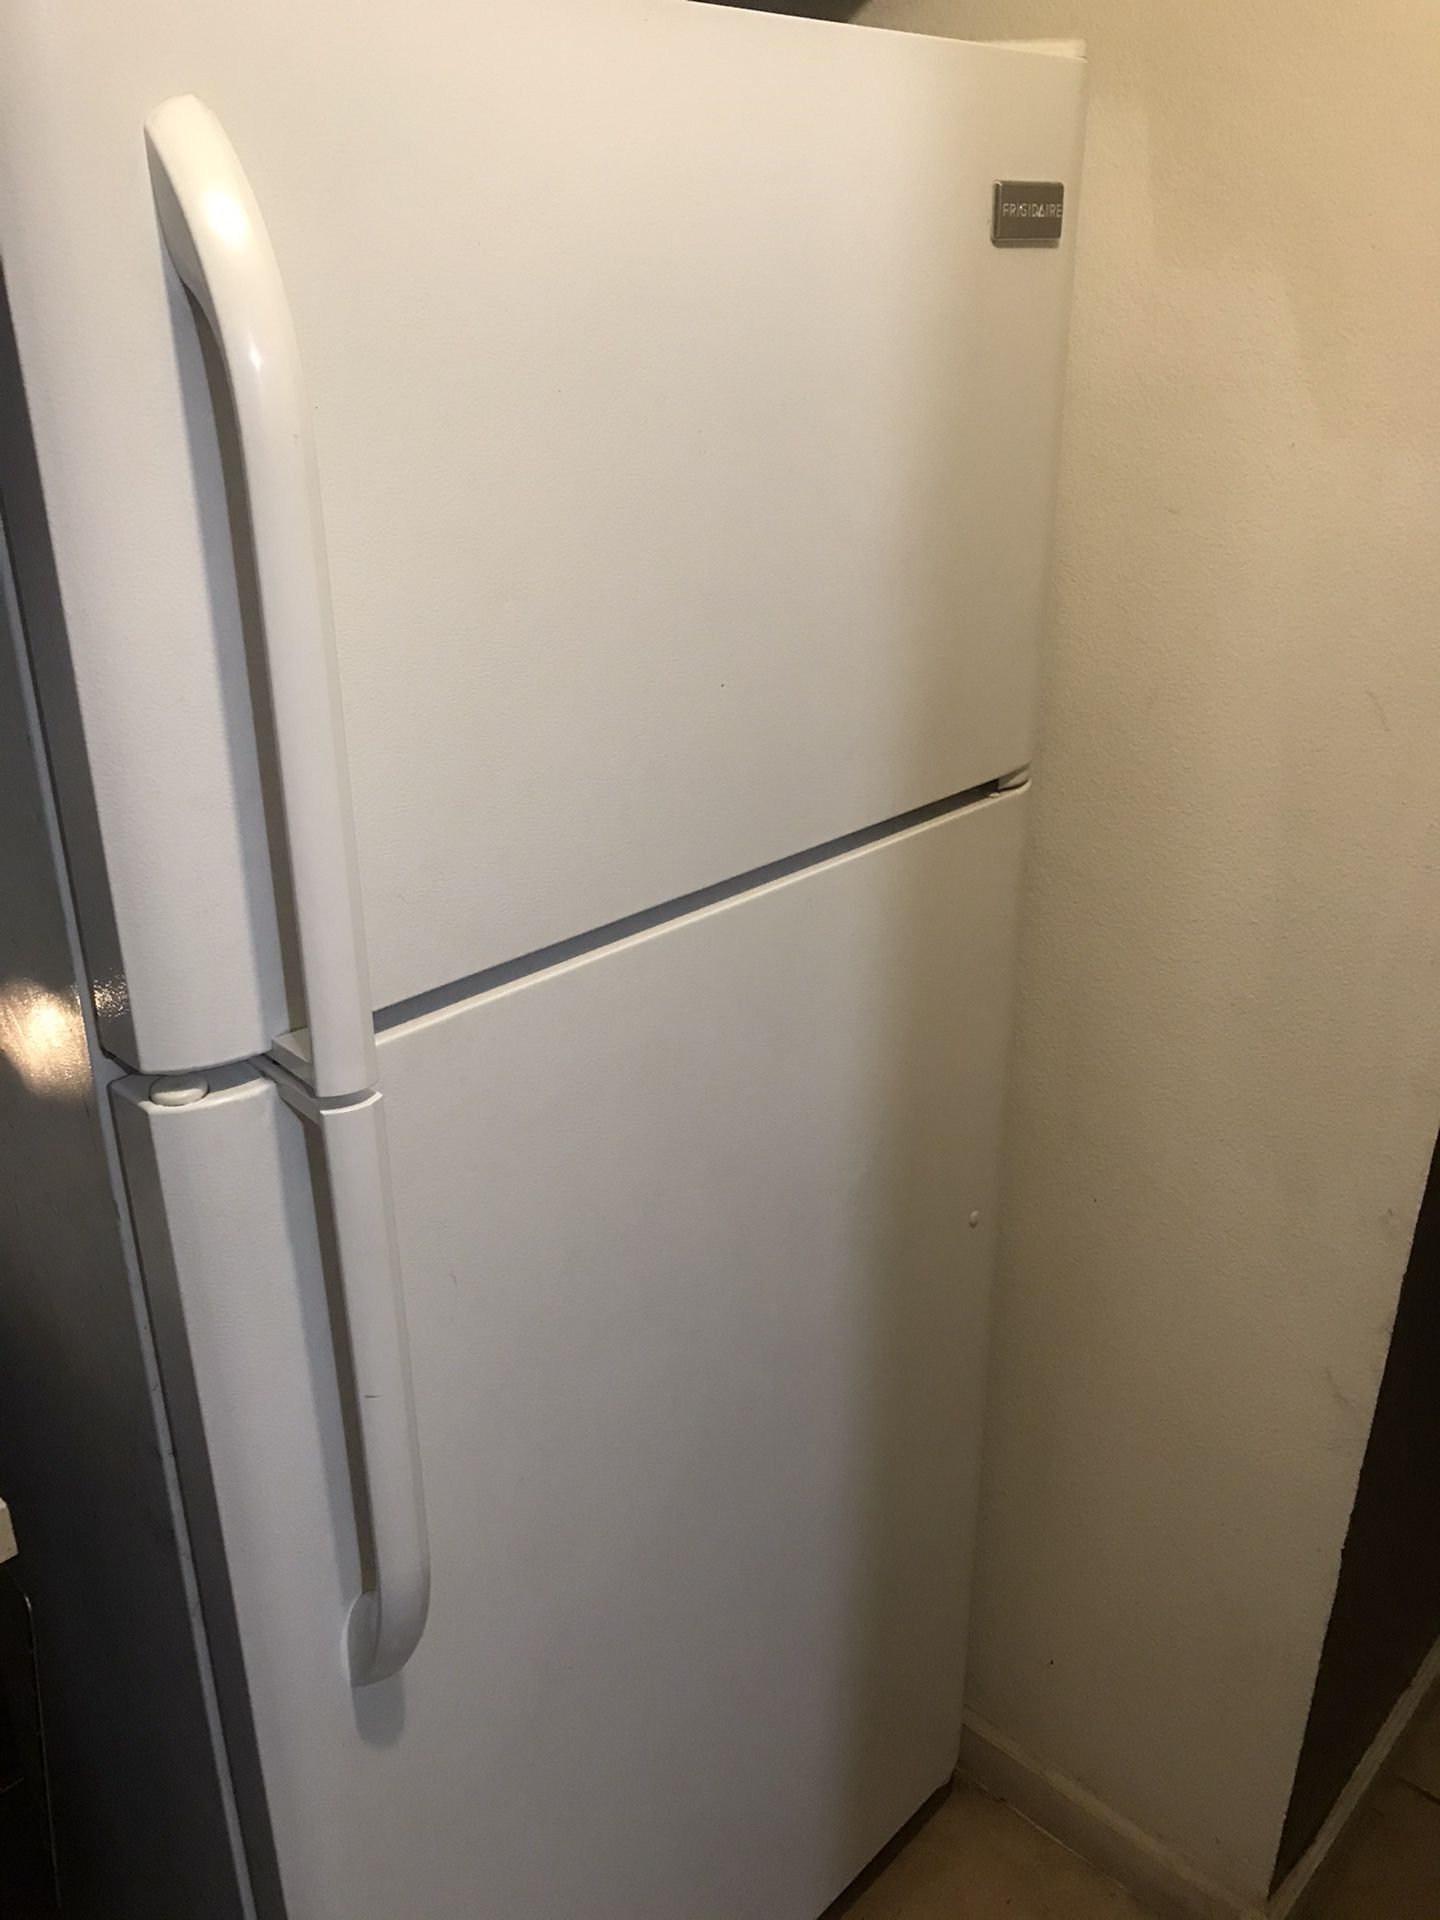 18.2 cu Ft Frigidaire Refrigerator 🌏